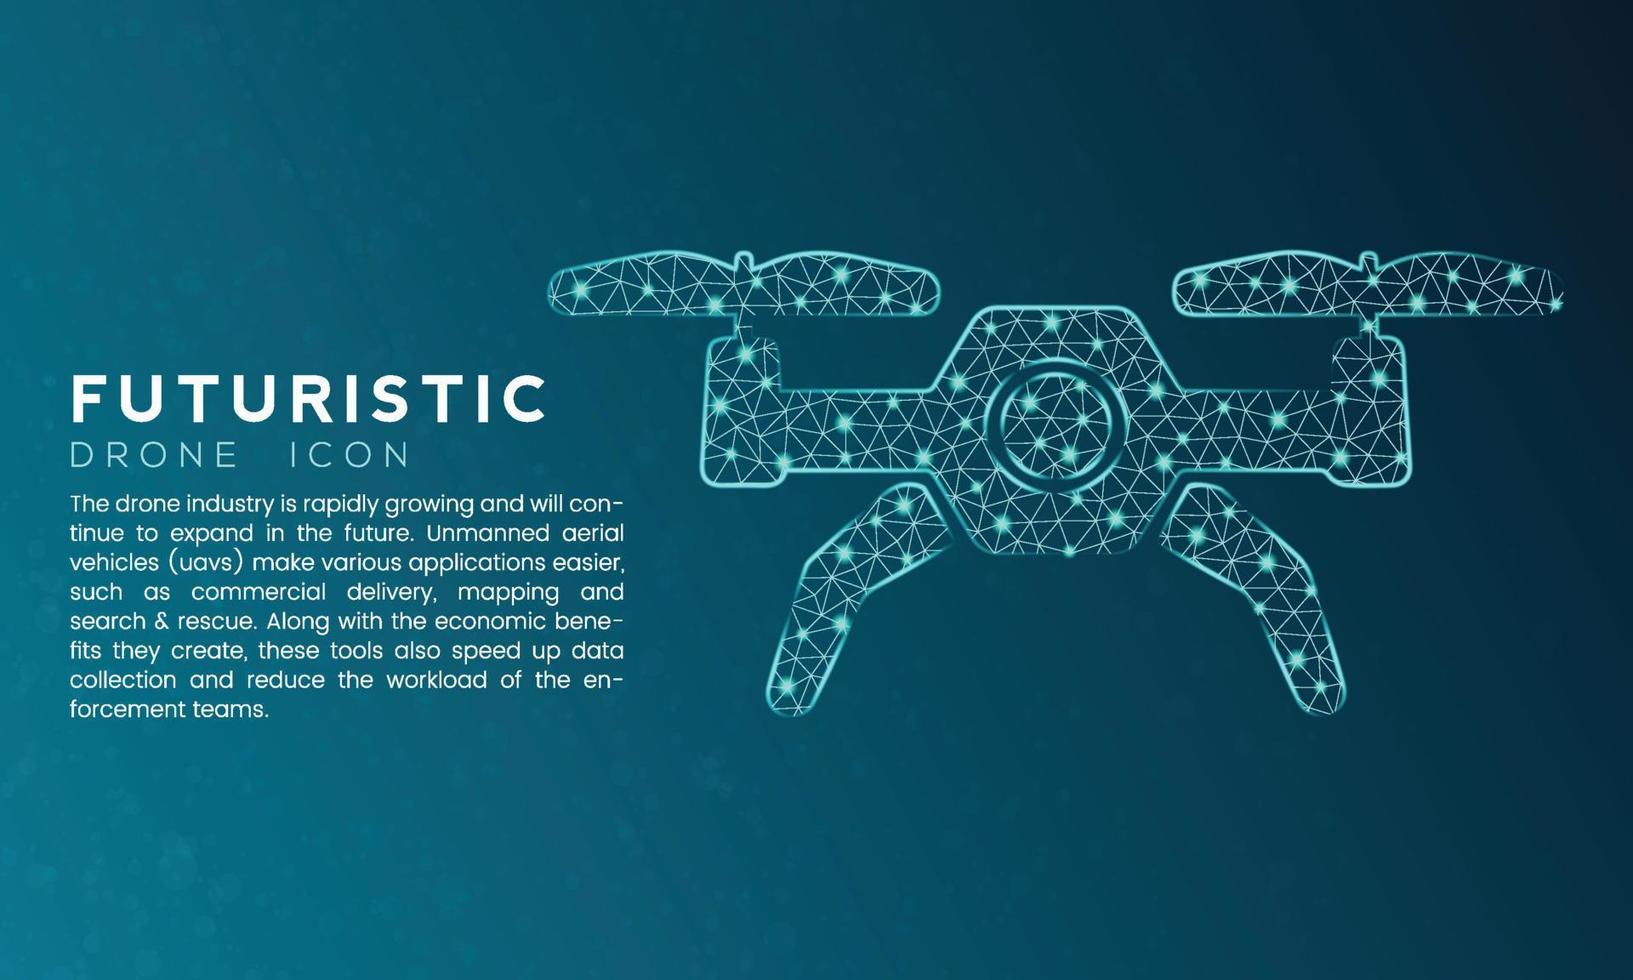 conceito de ícone de drone futurista azul com pontos conectados a nós de polígono e efeito neon vetor